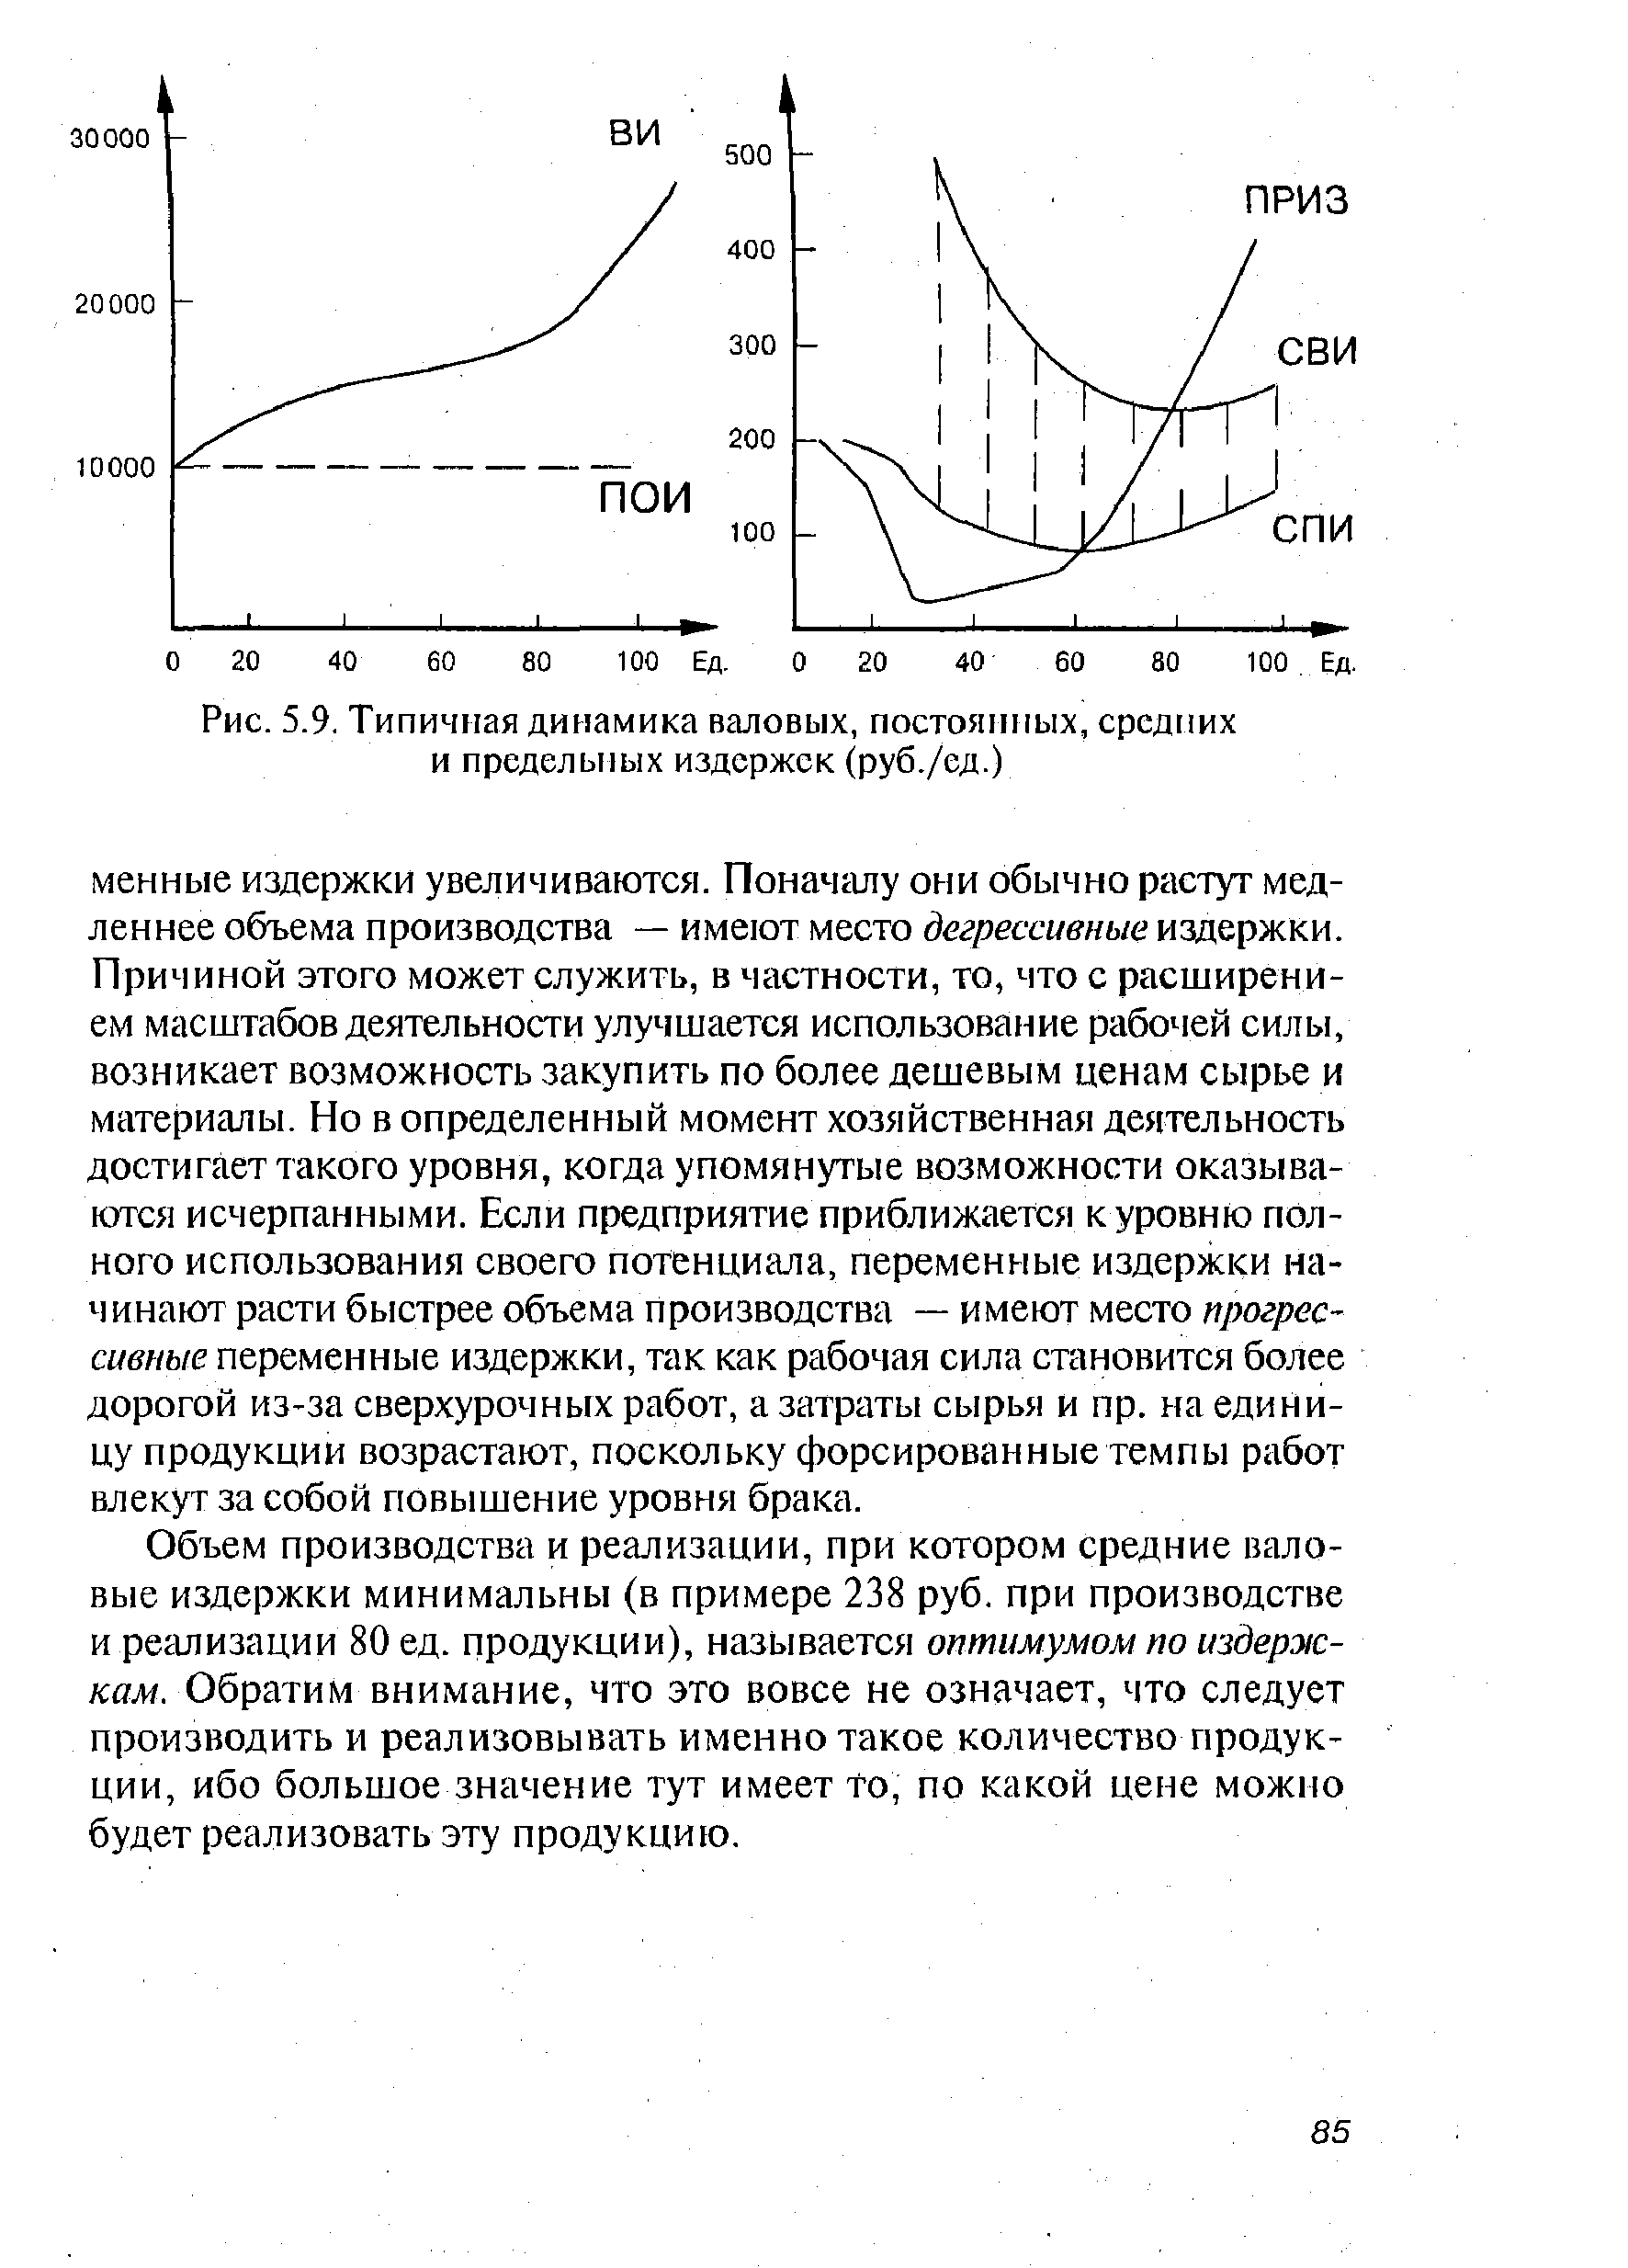 Рис. 5.9. Типичная динамика валовых, постоянных, средних и предельных издержек (руб./ед.)
